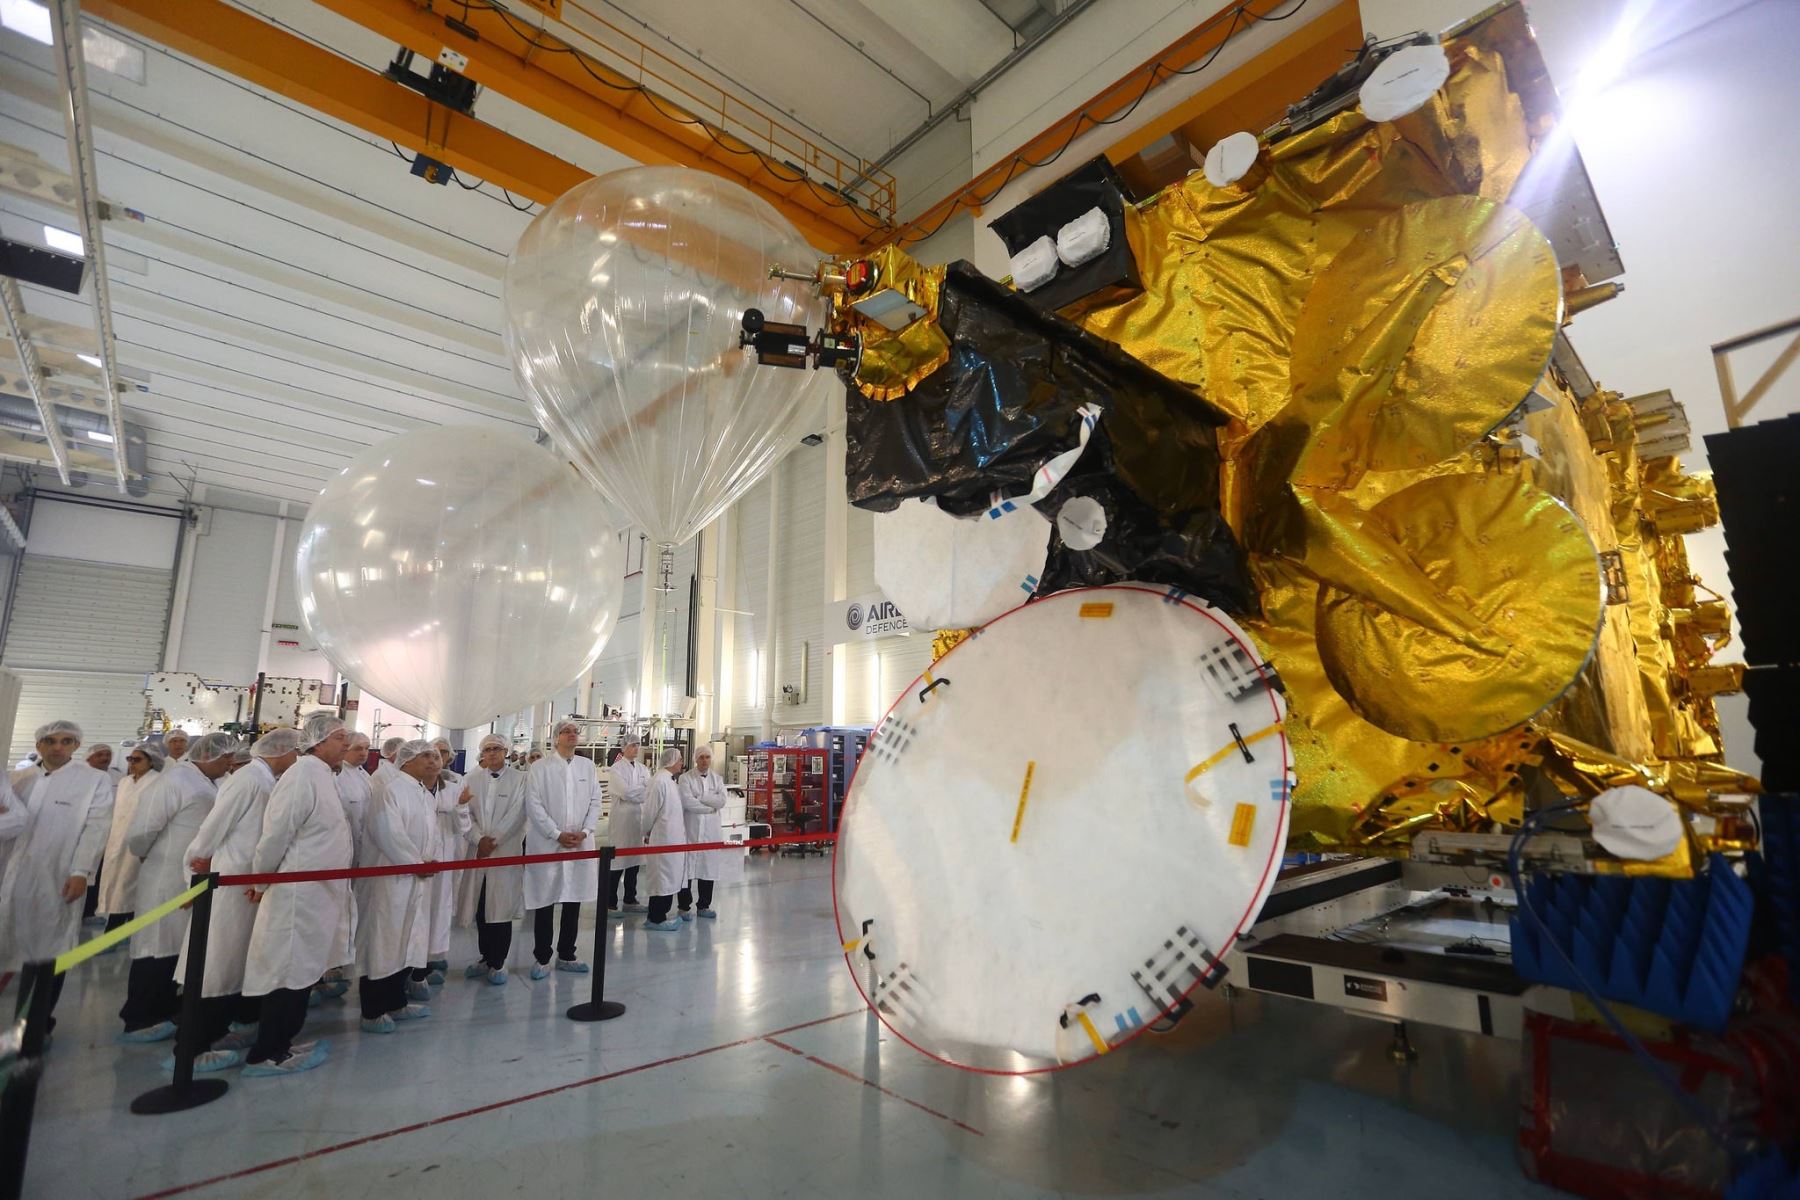 Visita de inspección a la construcción del primer satélite peruano realizó el presidente Ollanta Humala en las instalaciones de la empresa AirBus en la ciudad de Toulouse